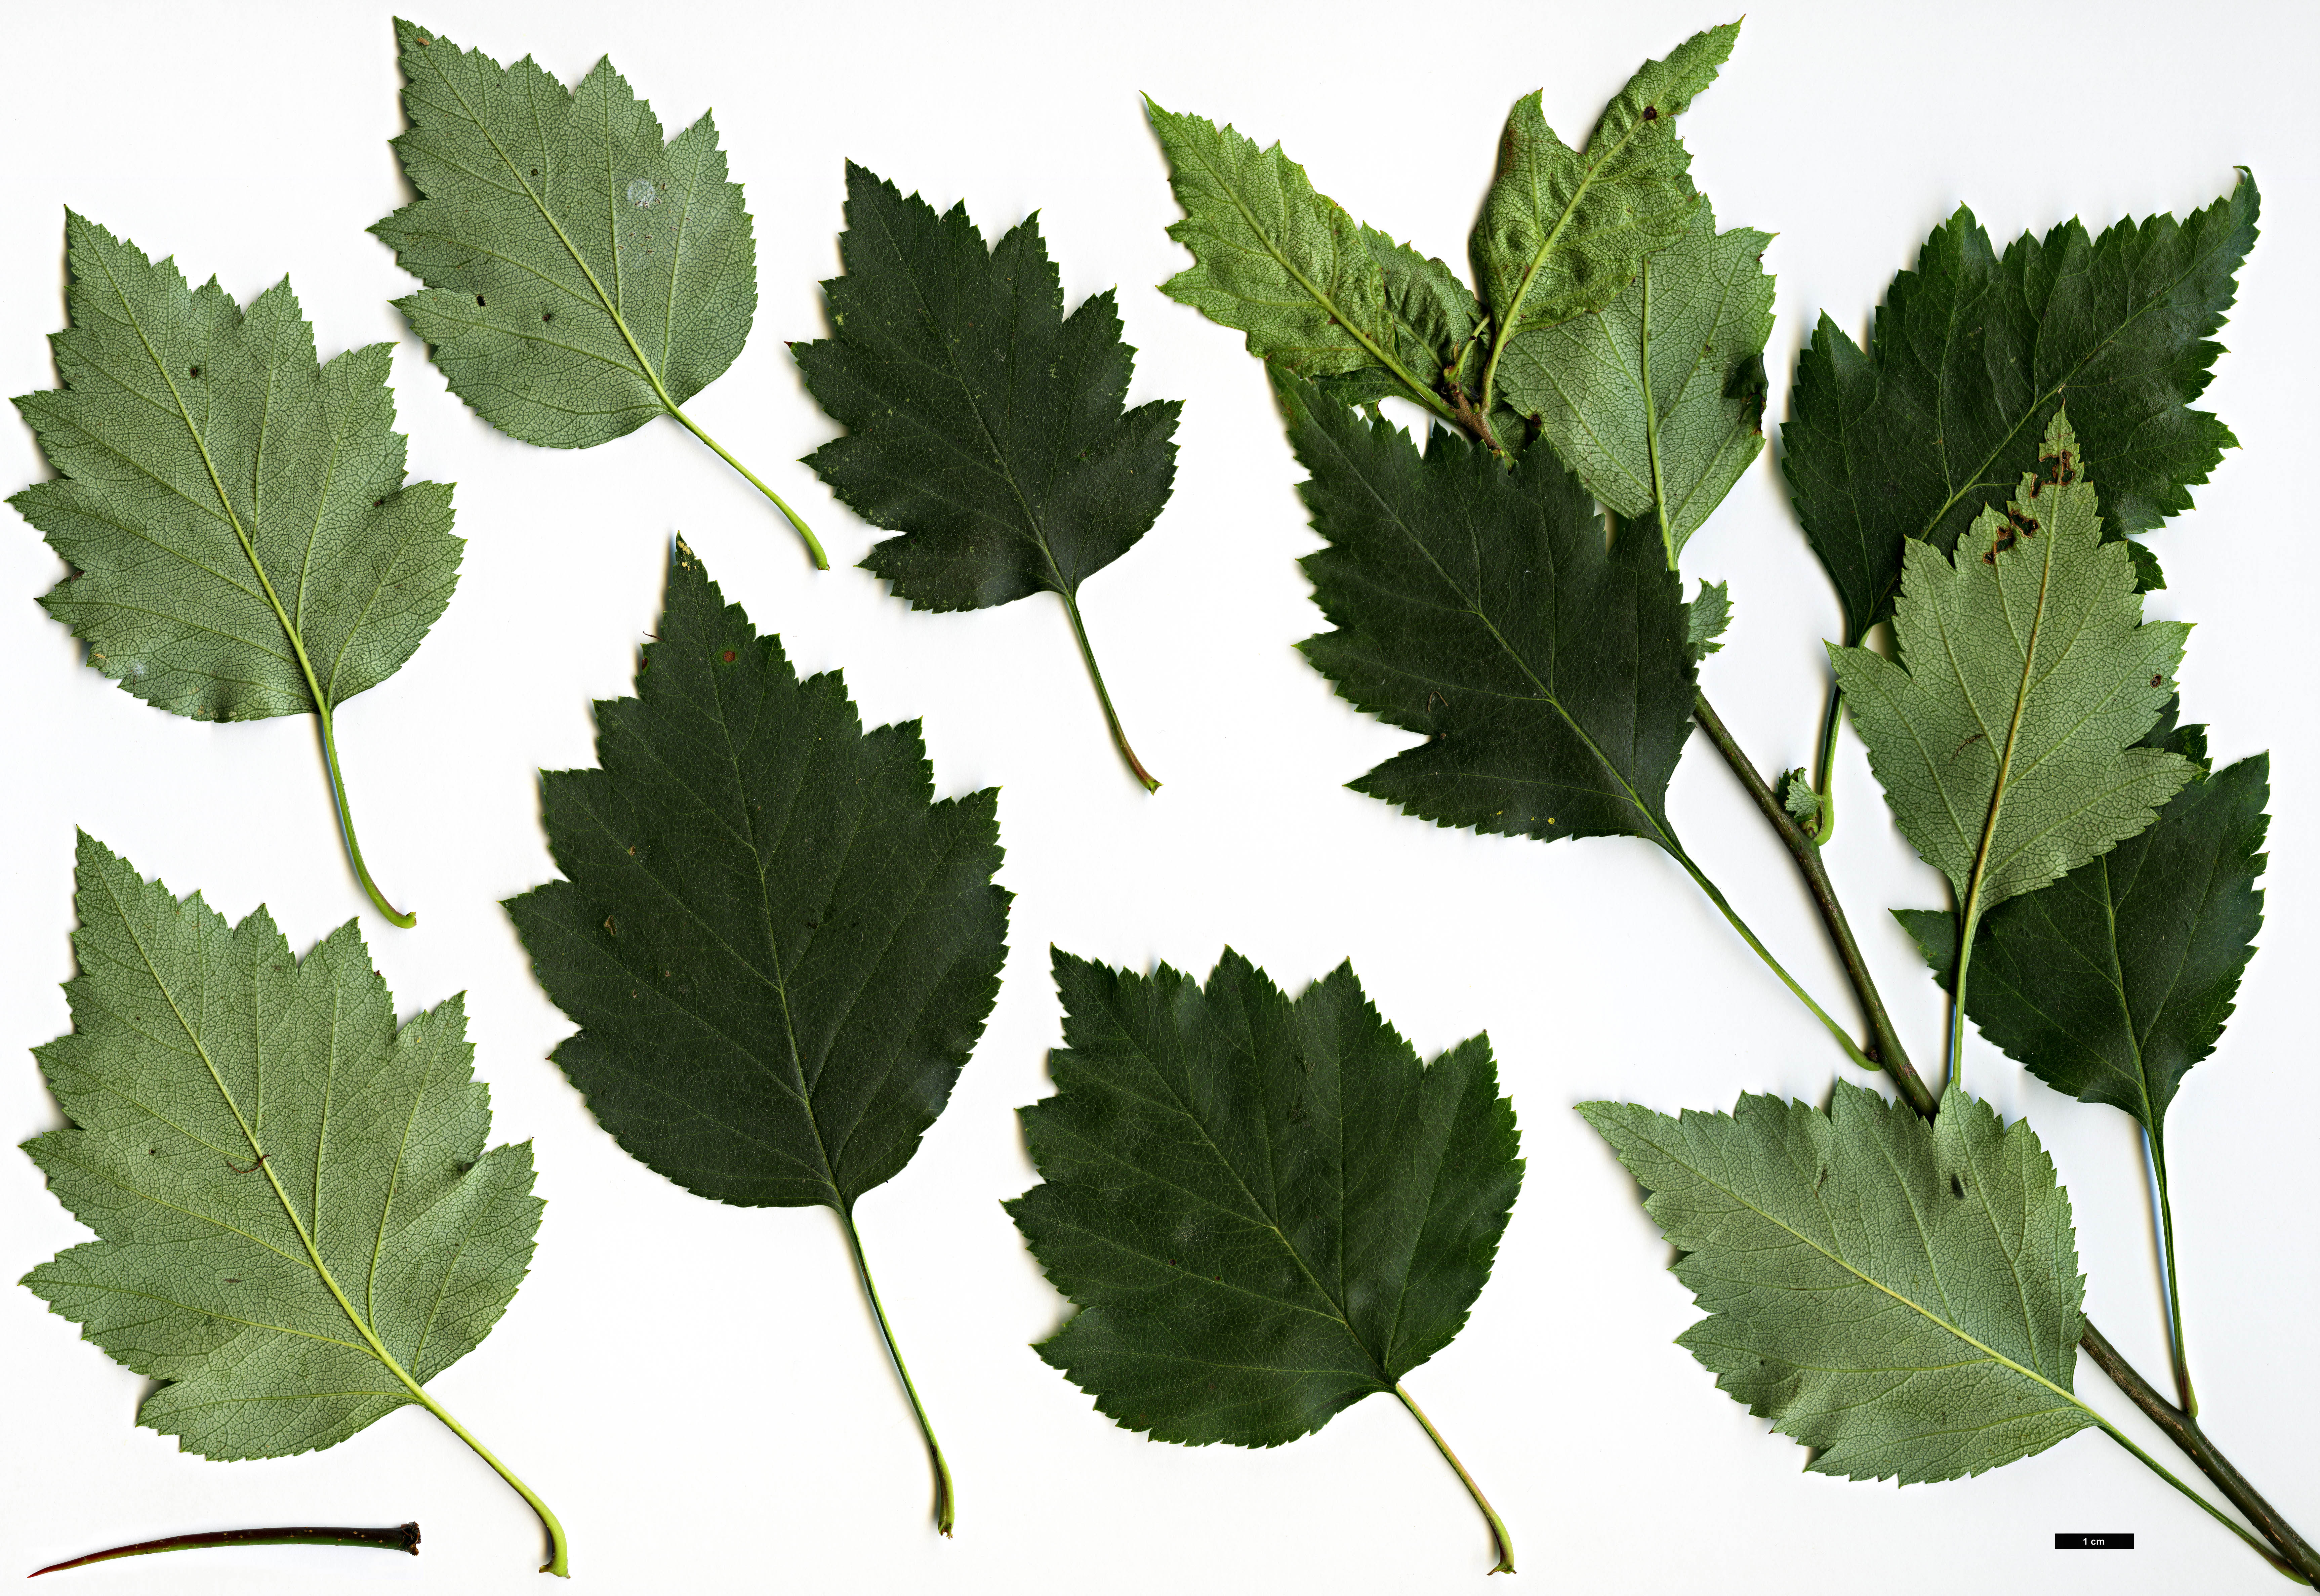 High resolution image: Family: Rosaceae - Genus: Crataegus - Taxon: pequotorum